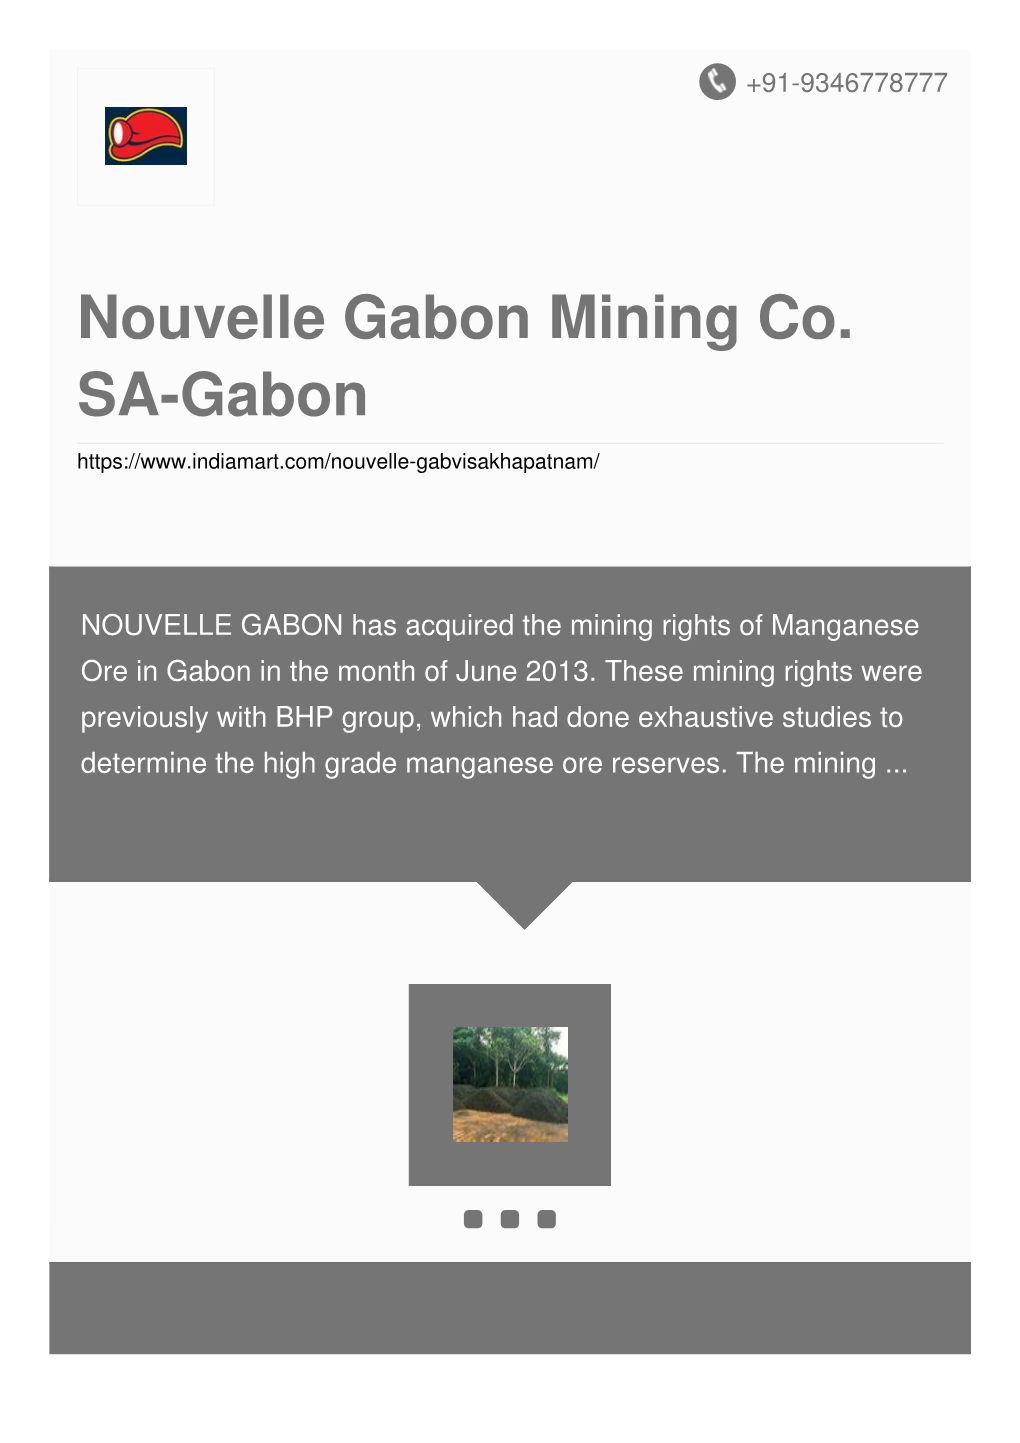 Nouvelle Gabon Mining Co. SA-Gabon